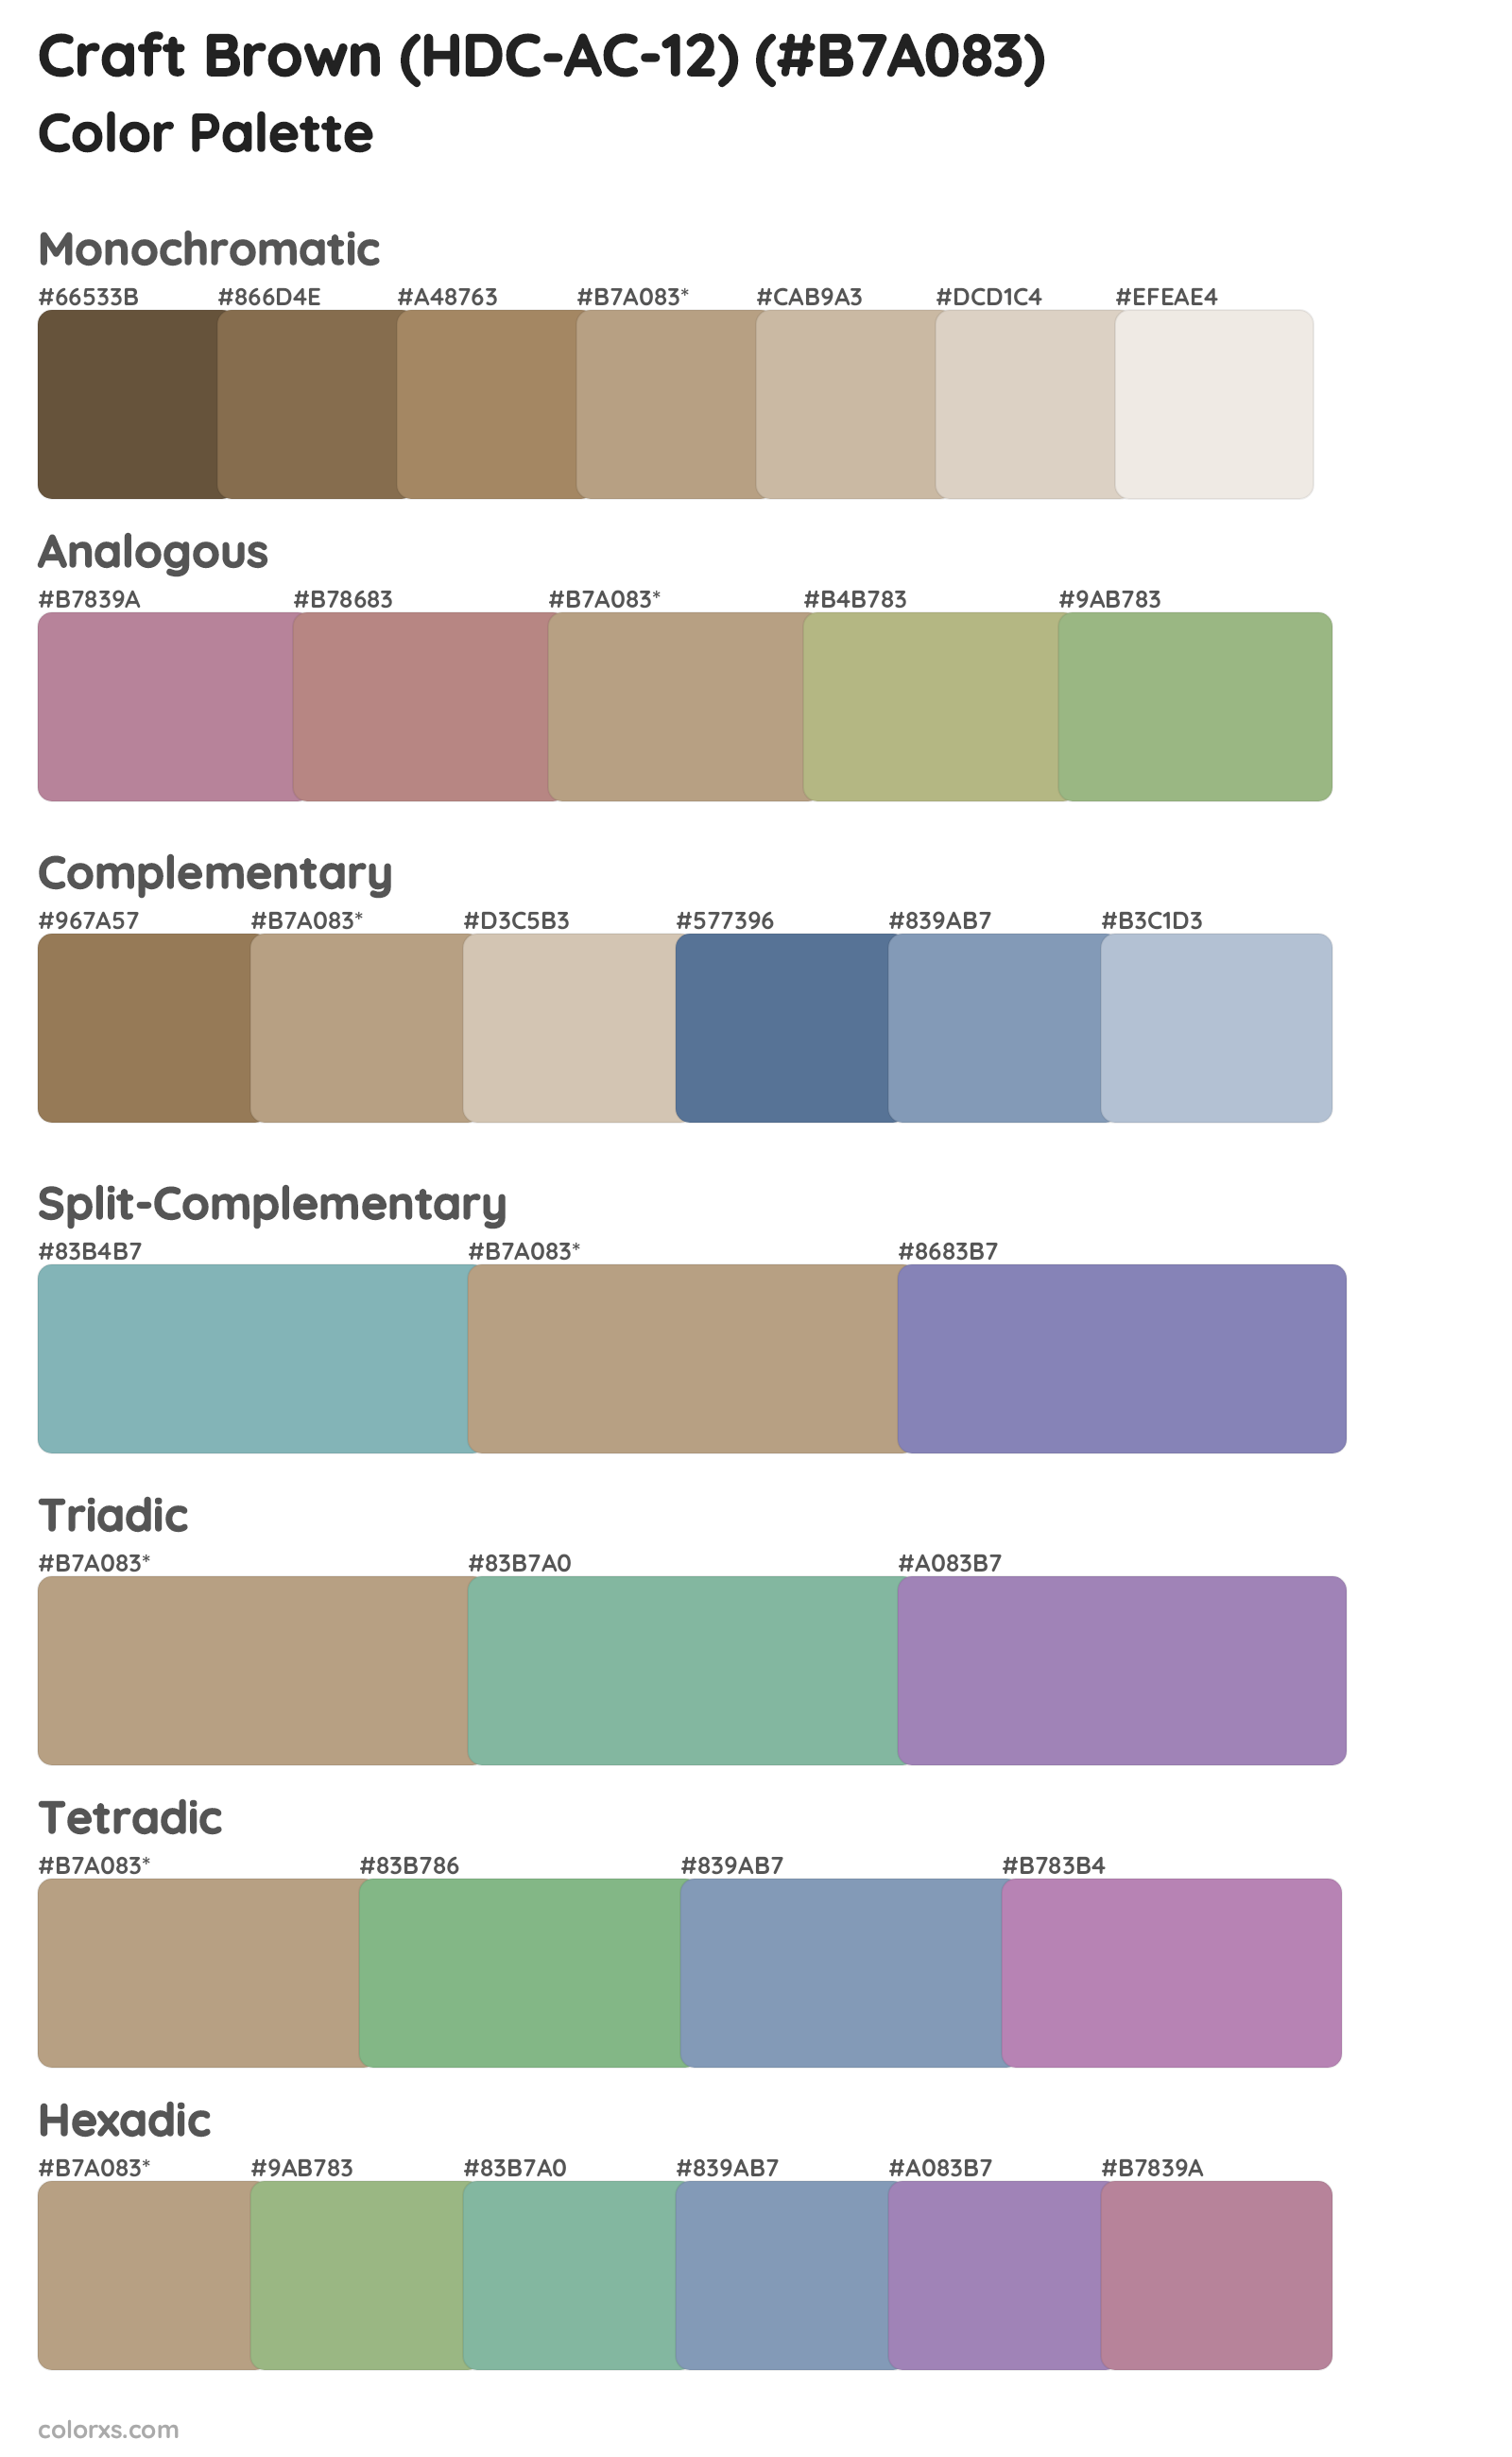 Craft Brown (HDC-AC-12) Color Scheme Palettes